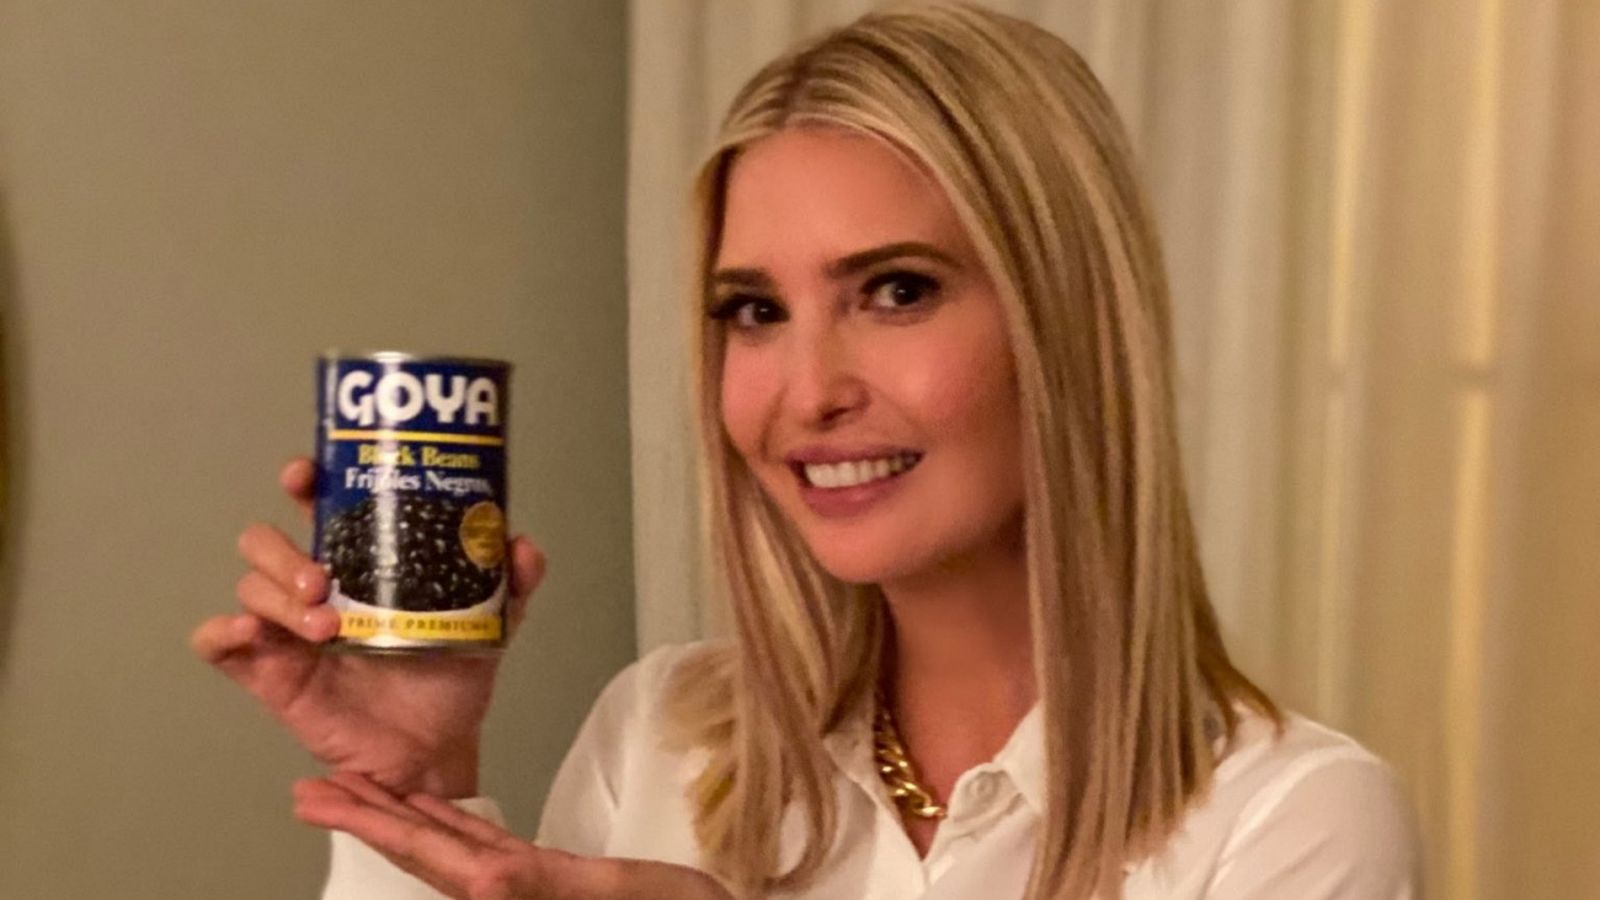 Donald Trump y su hija Ivanka posan con frijoles y otros productos de la empresa Goya en medio del 'boicot' a la marca hispana